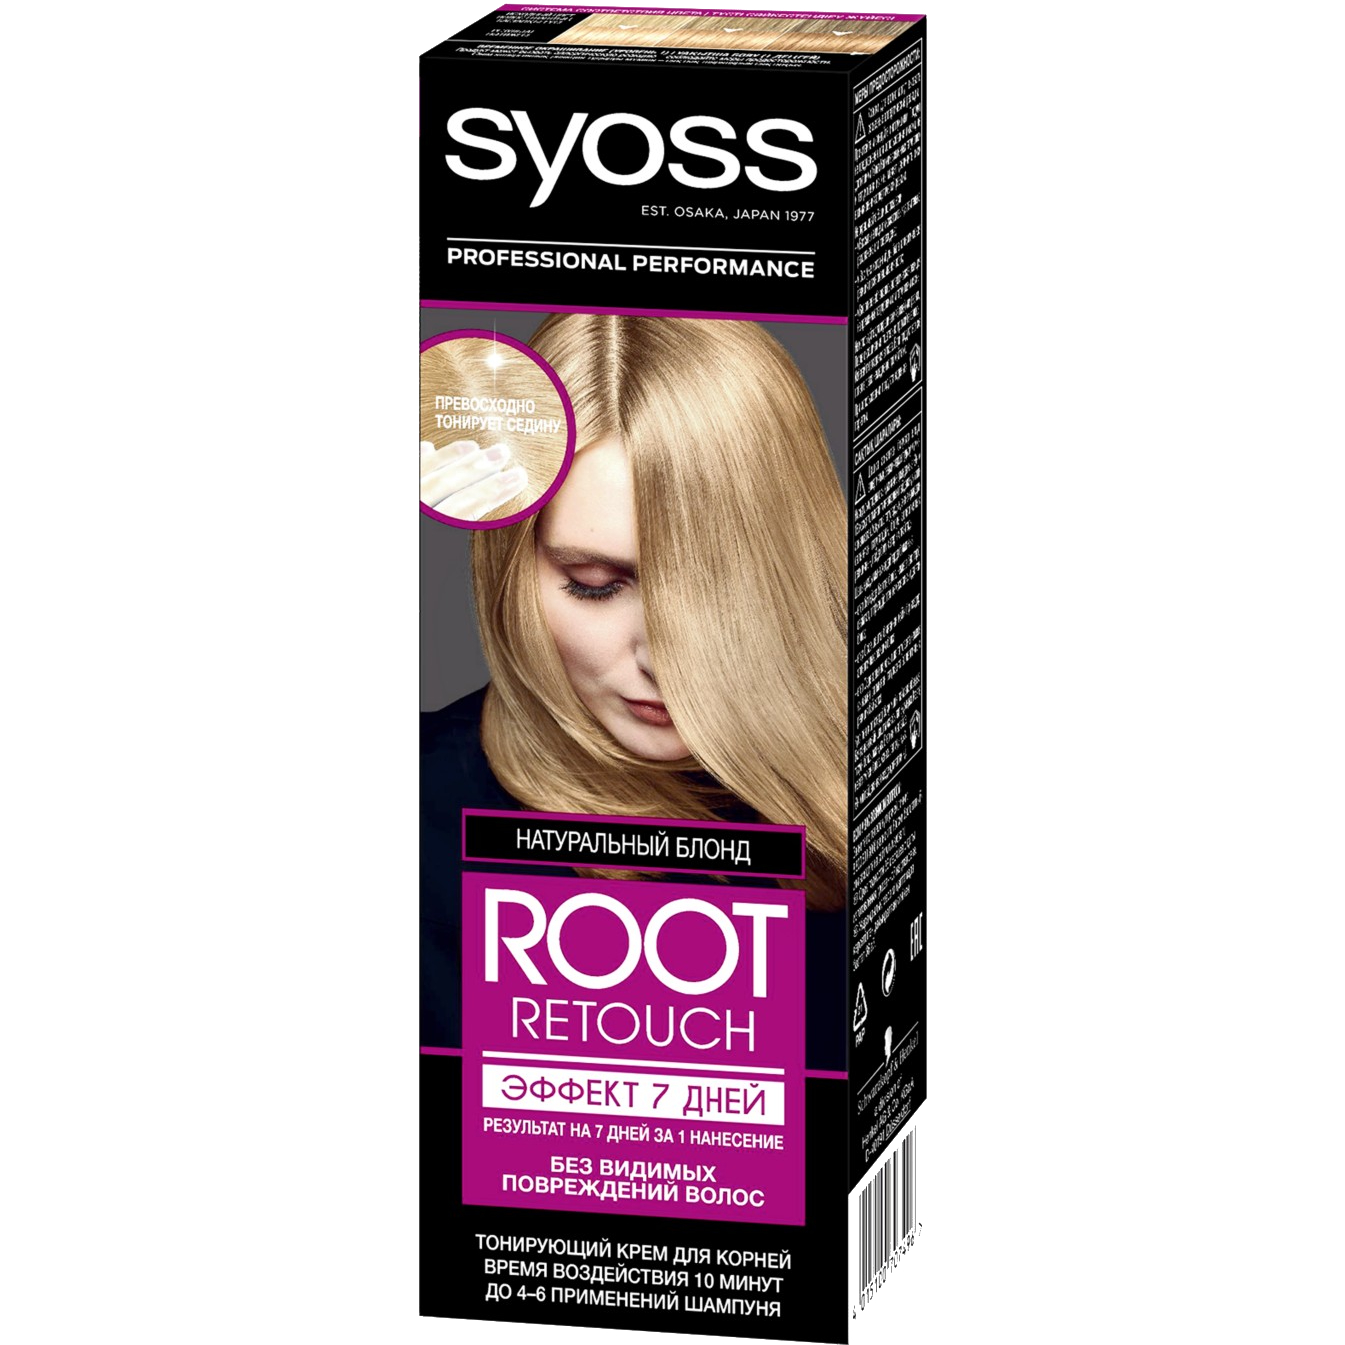 Крем для волос Syoss Root Retoucher тонирующий Эффект 7 дней оттенок 8.0 Натуральный Блонд, 60 мл мусс для волос syoss root retoucher тонирующий мерцающее серебро 120 мл